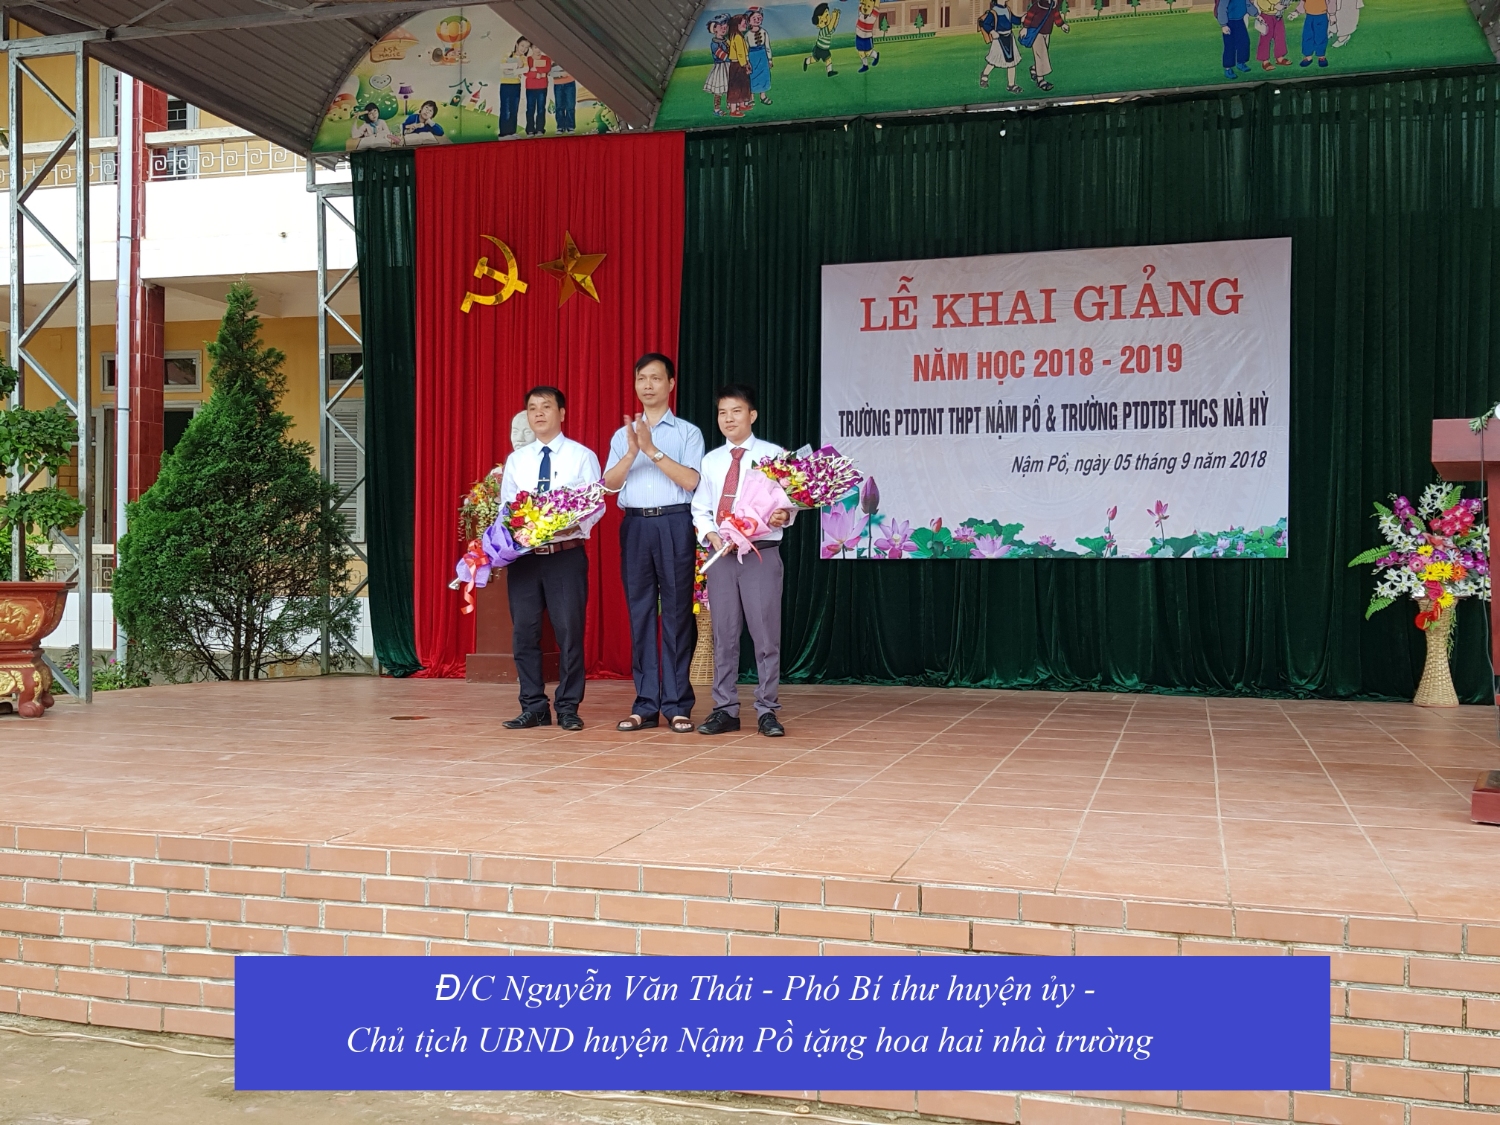 Thầy và trò trường PTDTNT THPT huyện Nậm Pồ trường PTDTBT THCS Nà Hỳ tổ chức lễ khai giảng năm